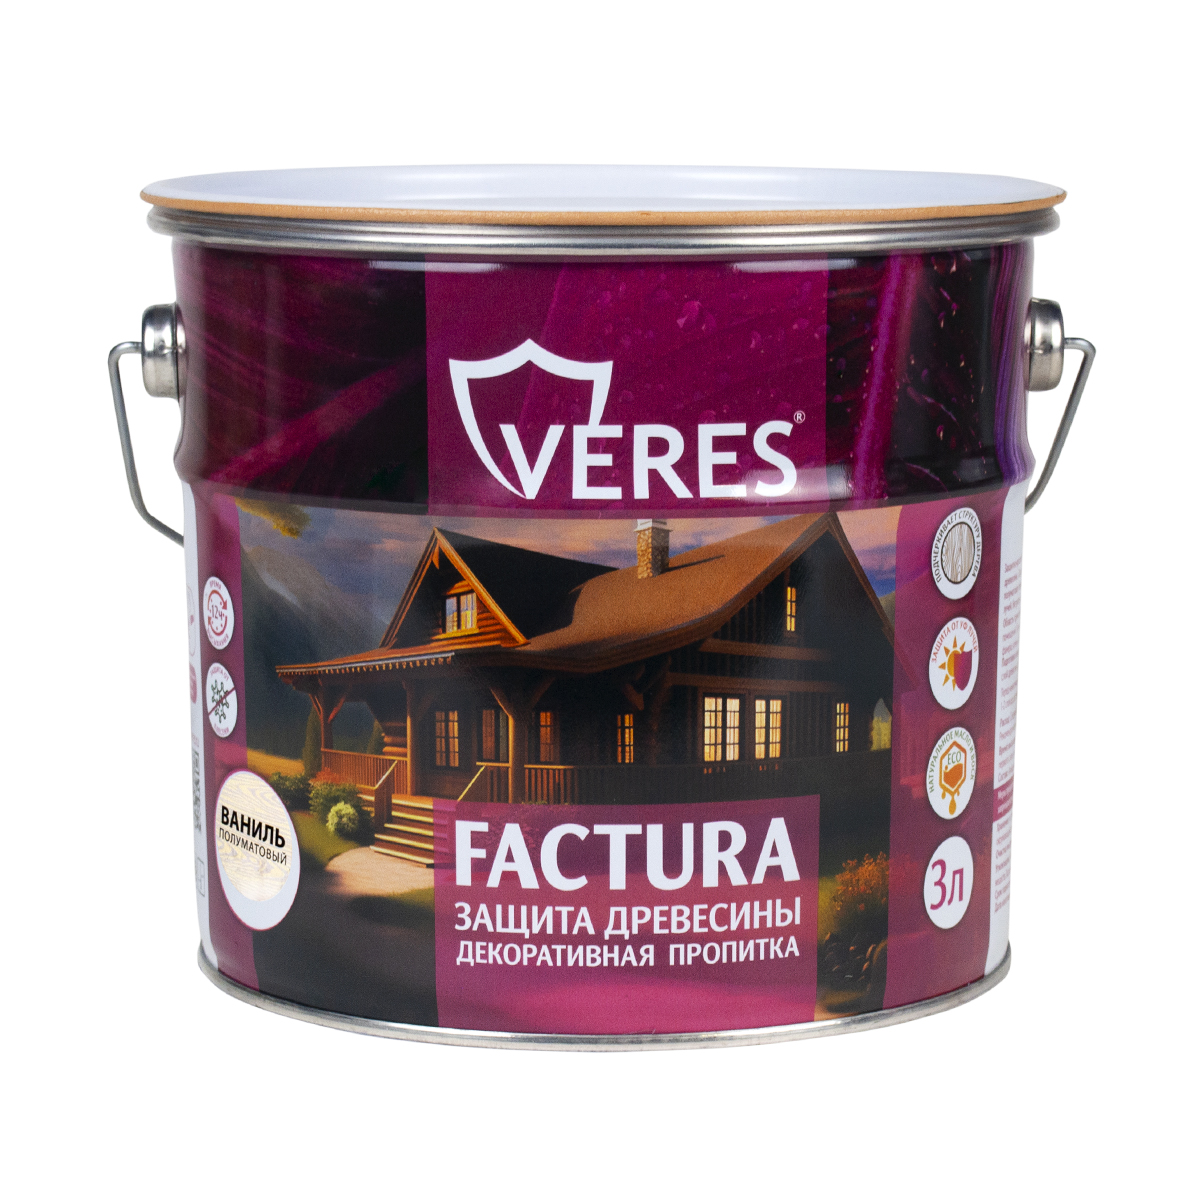 Декоративная пропитка для дерева Veres Factura полуматовая 3 л ваниль, VR-084